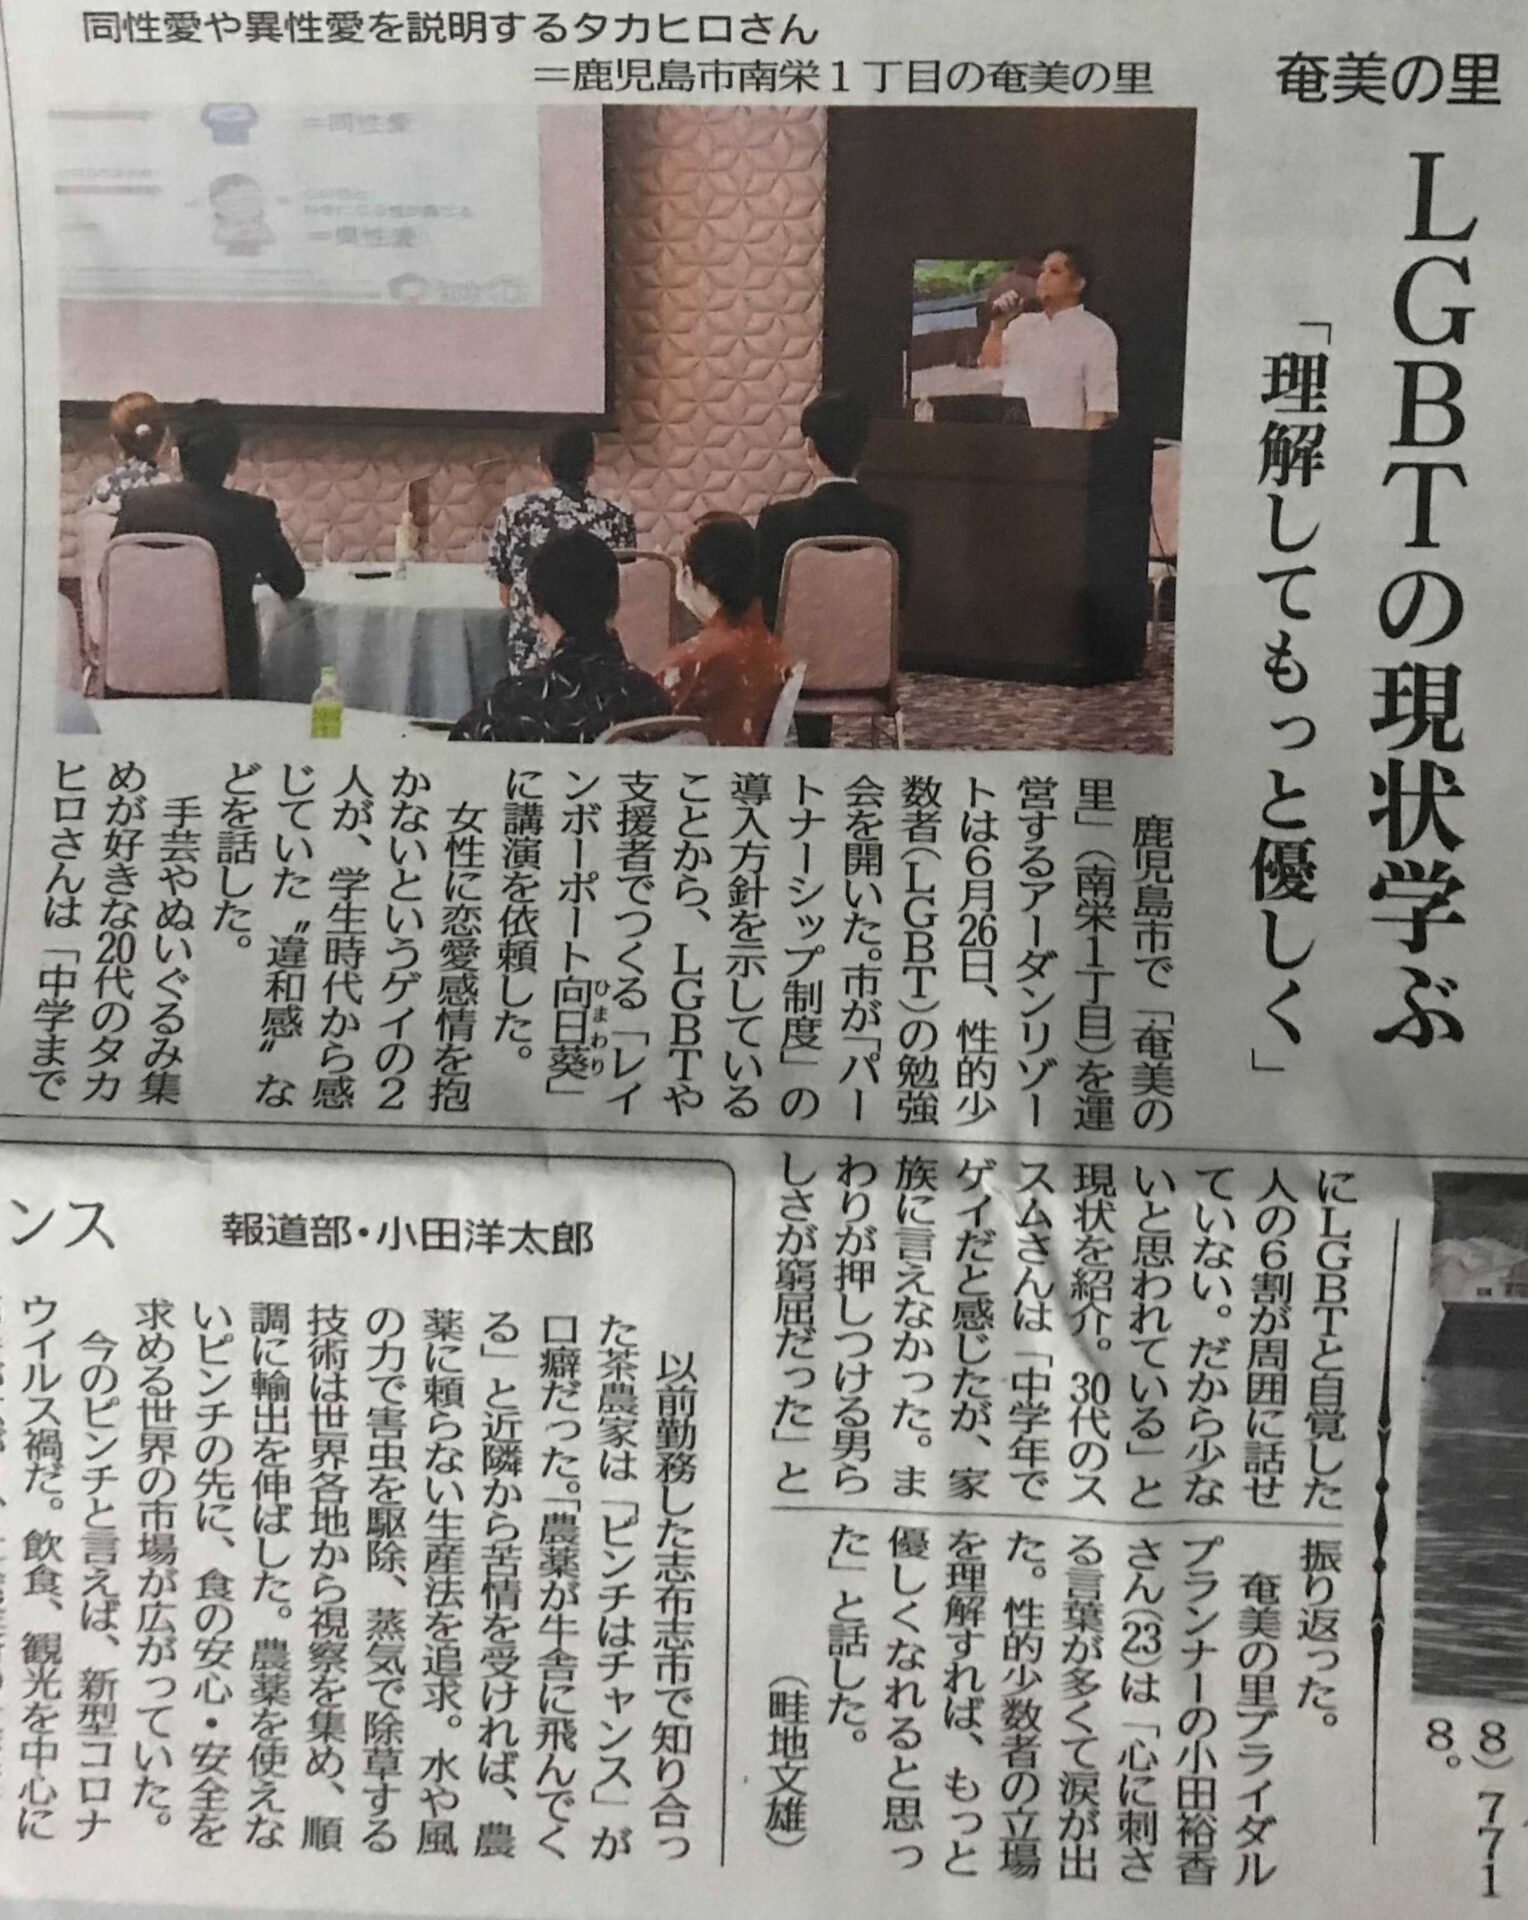 南日本新聞・LGBT勉強会に関する記事が掲載されました